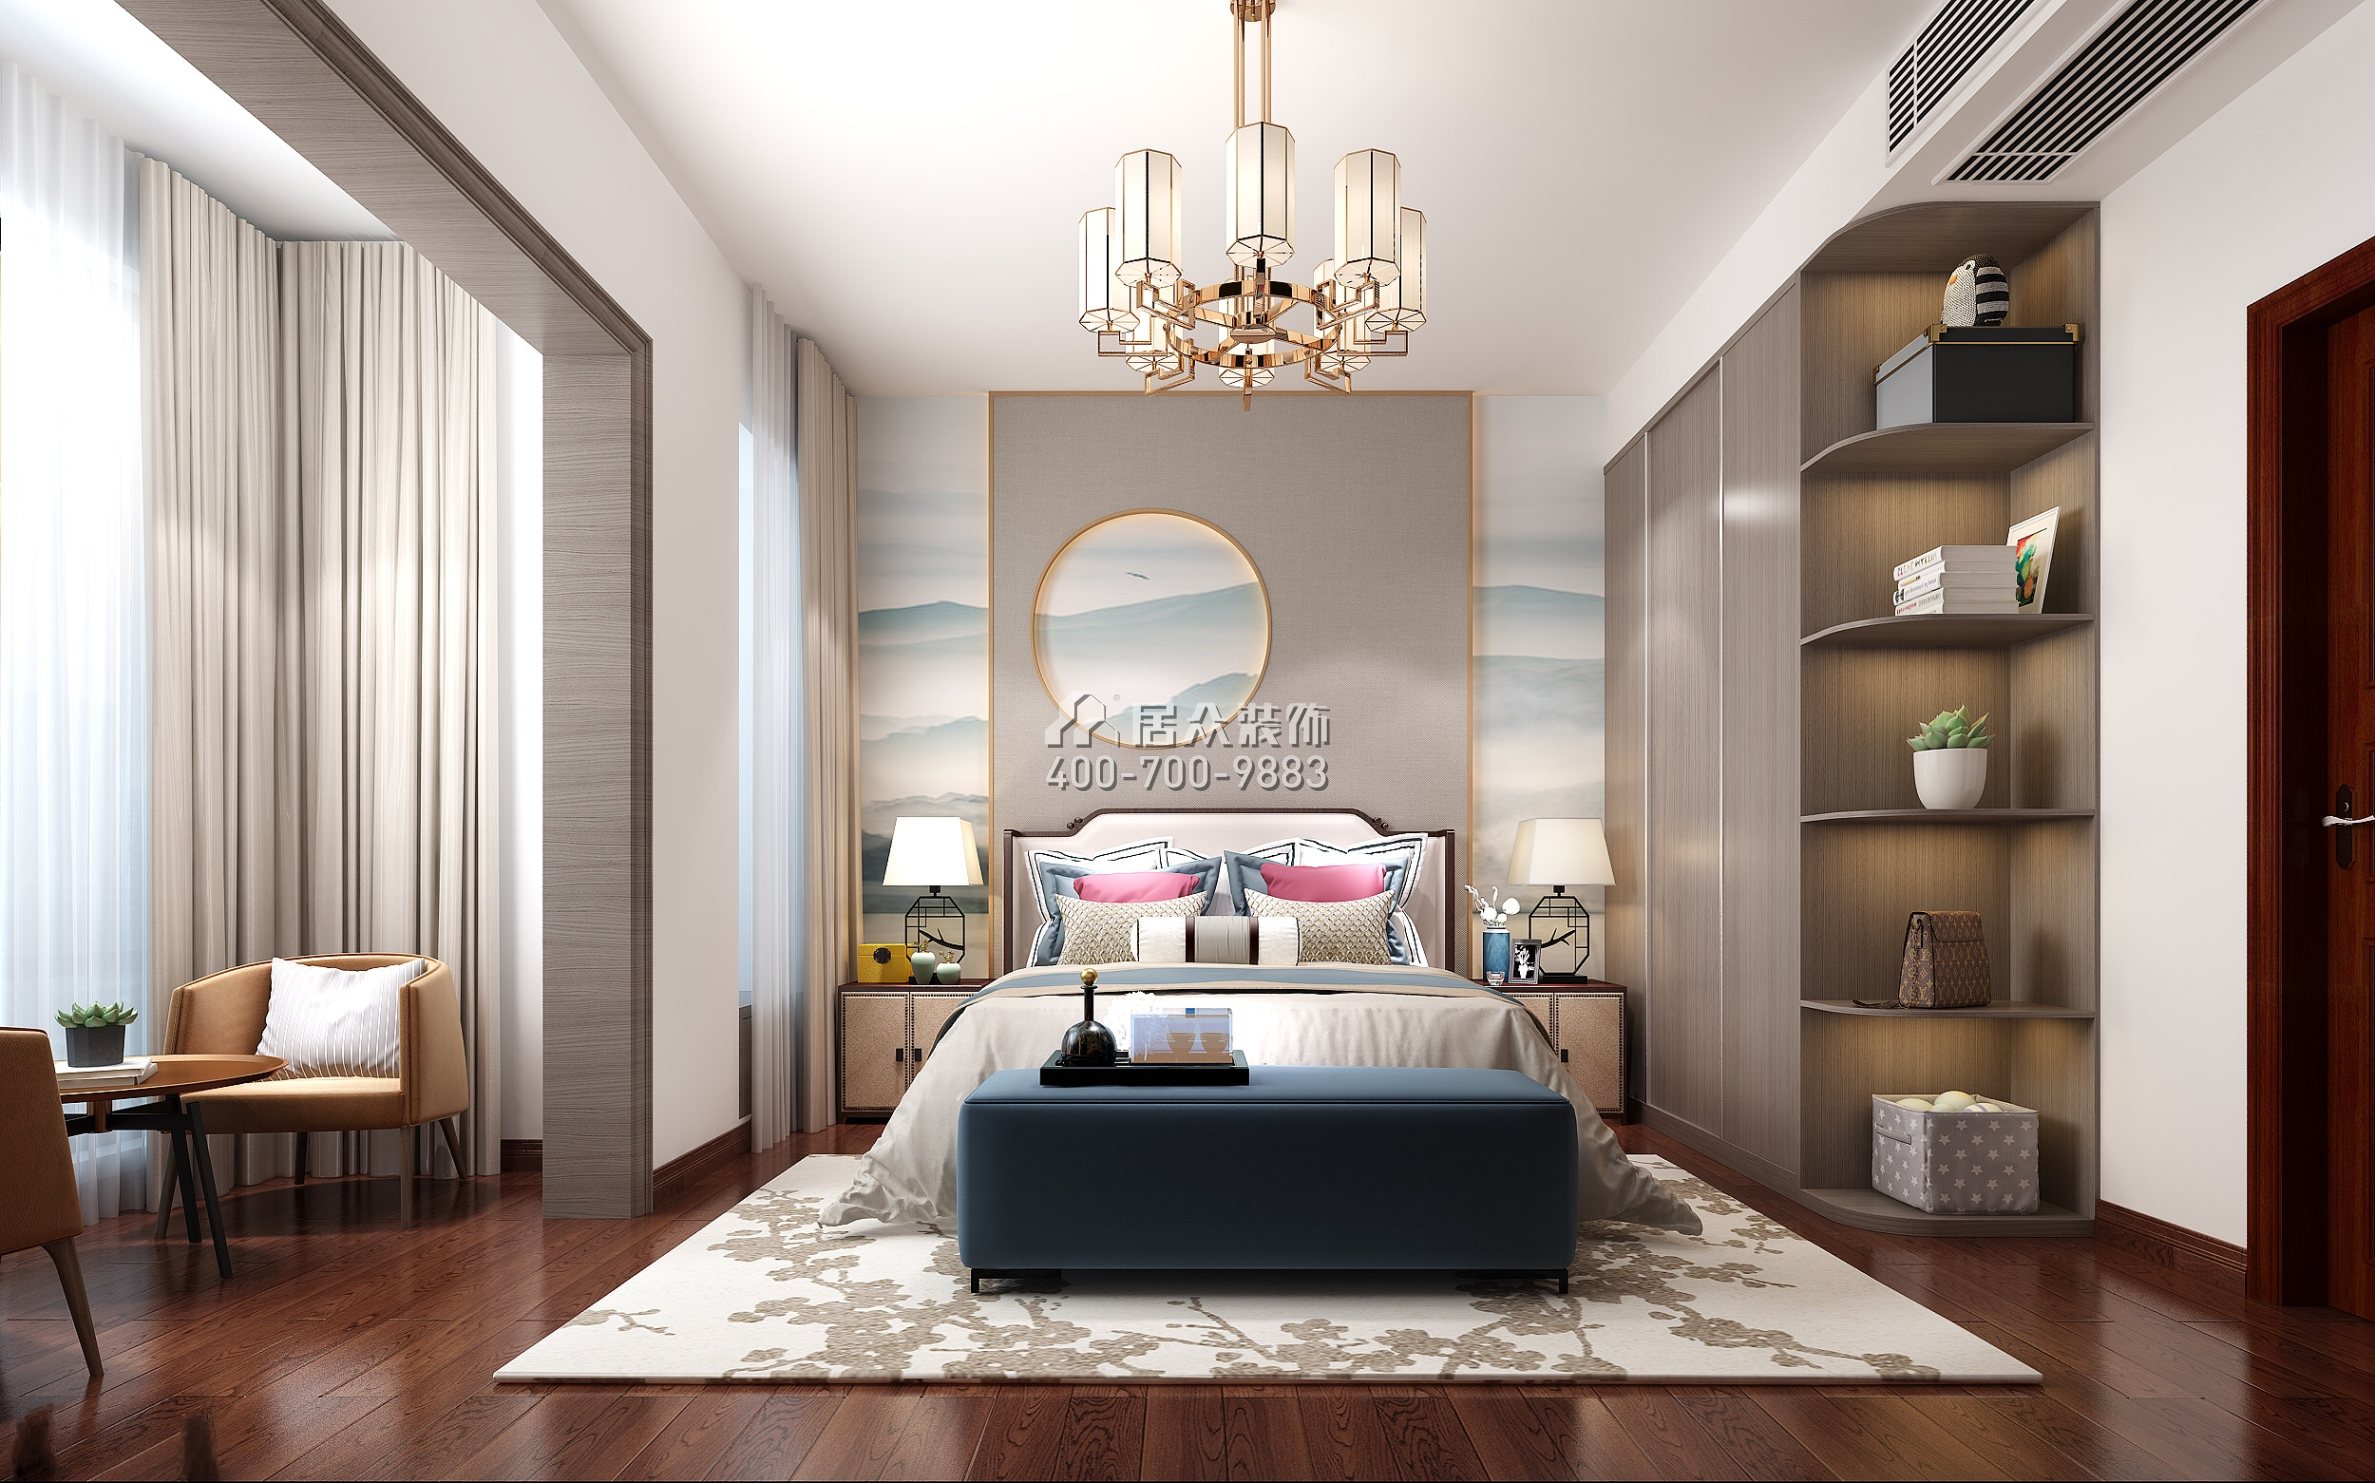 白云堡豪苑尚云名邸213平方米中式风格平层户型卧室装修效果图